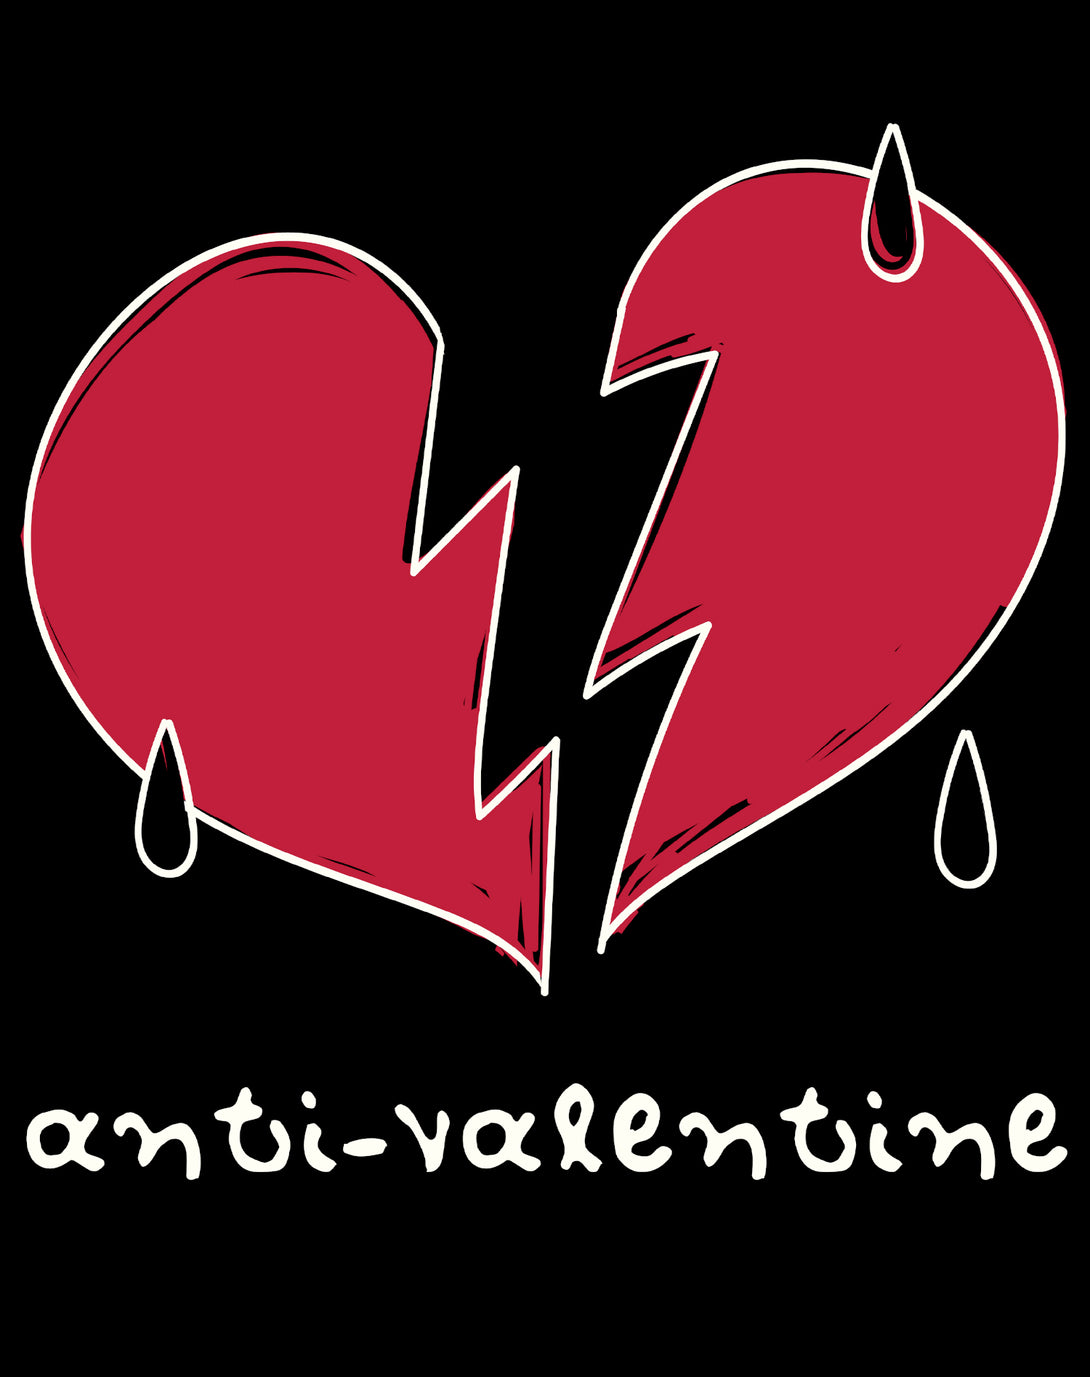 Anti Valentine Broken Weeping Heart Men's T-shirt Black - Urban Species Design Close Up